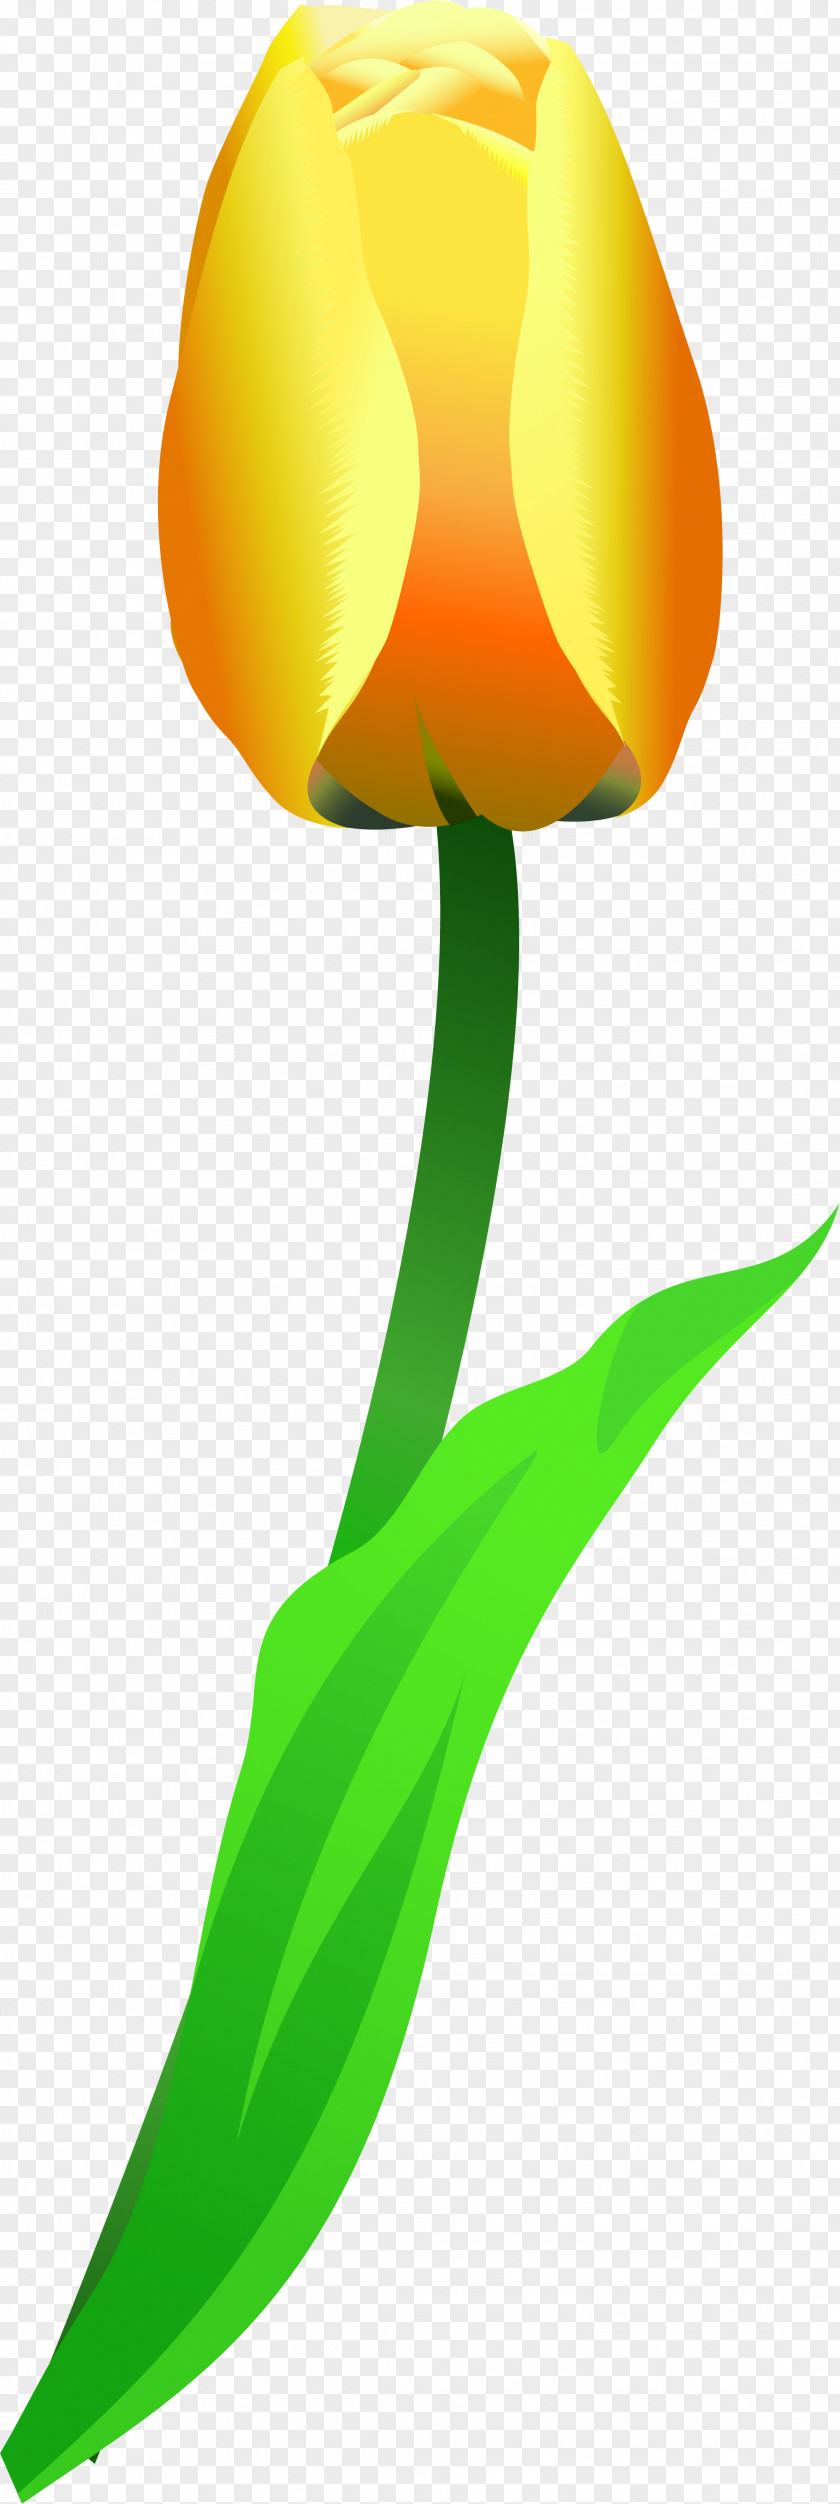 Tulip Flower Leaf Plant Stem Petal PNG